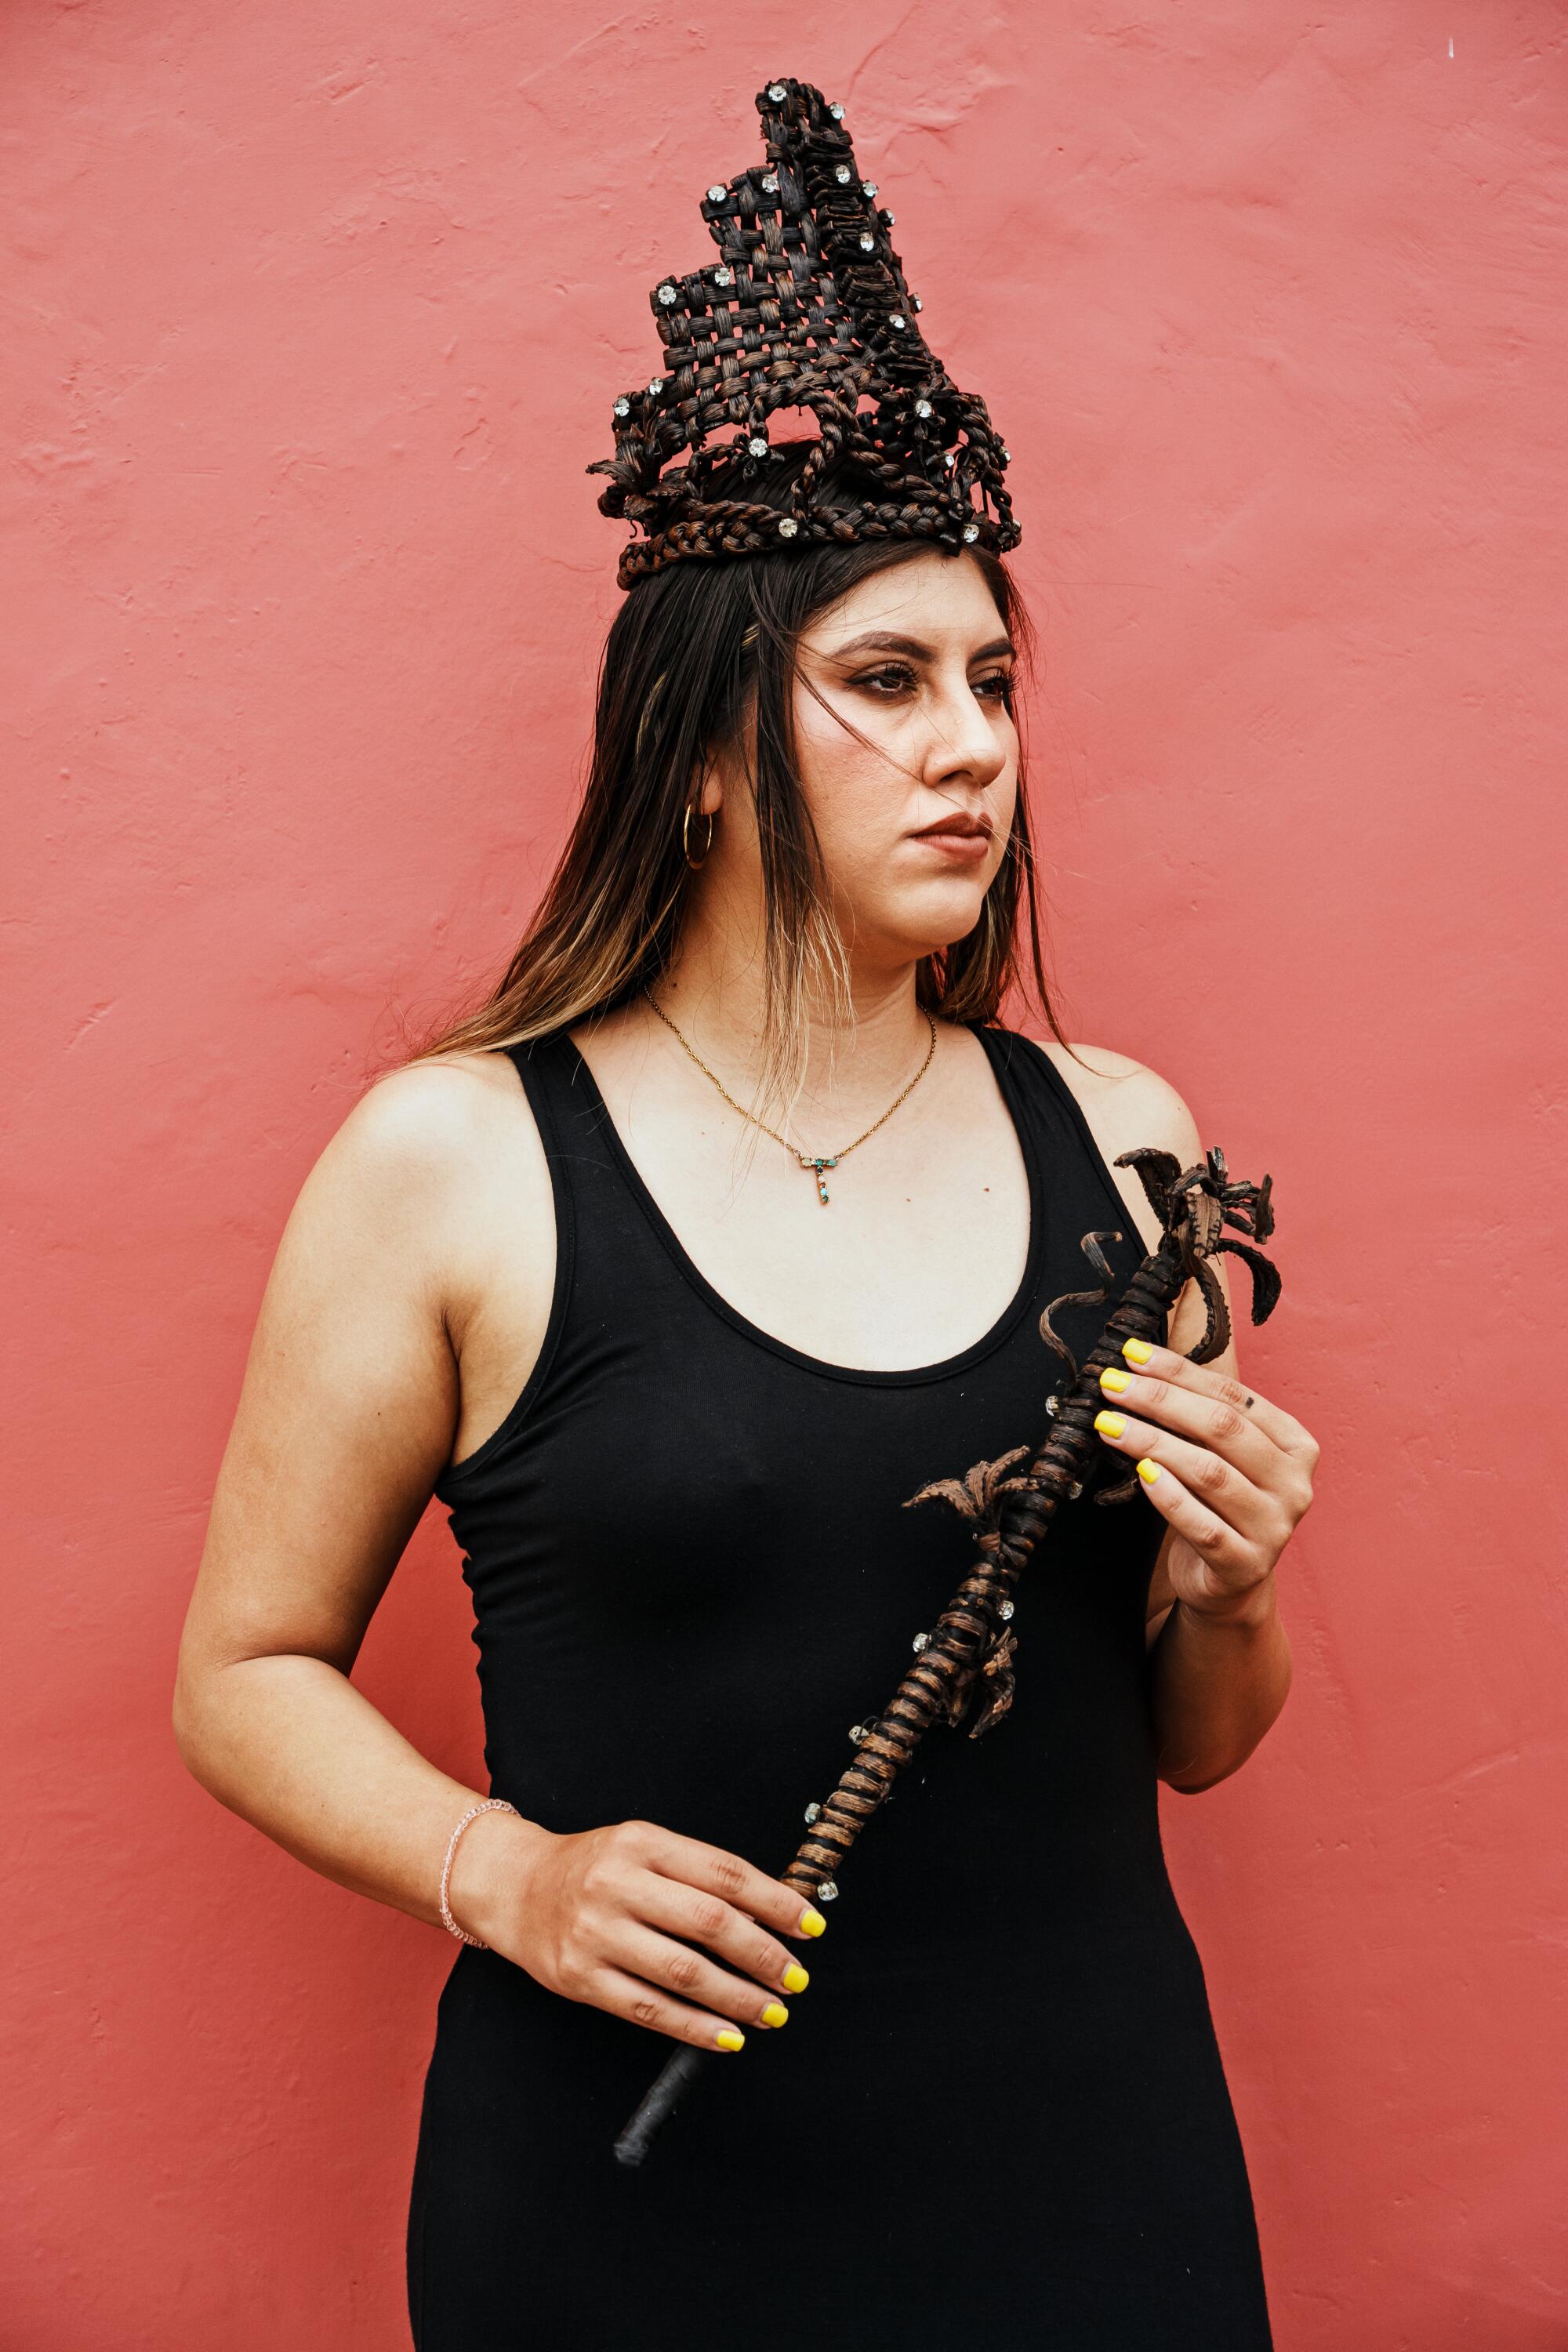 Таня Заяс, 26 лет, позирует для портрета с ванильной короной и палочкой.